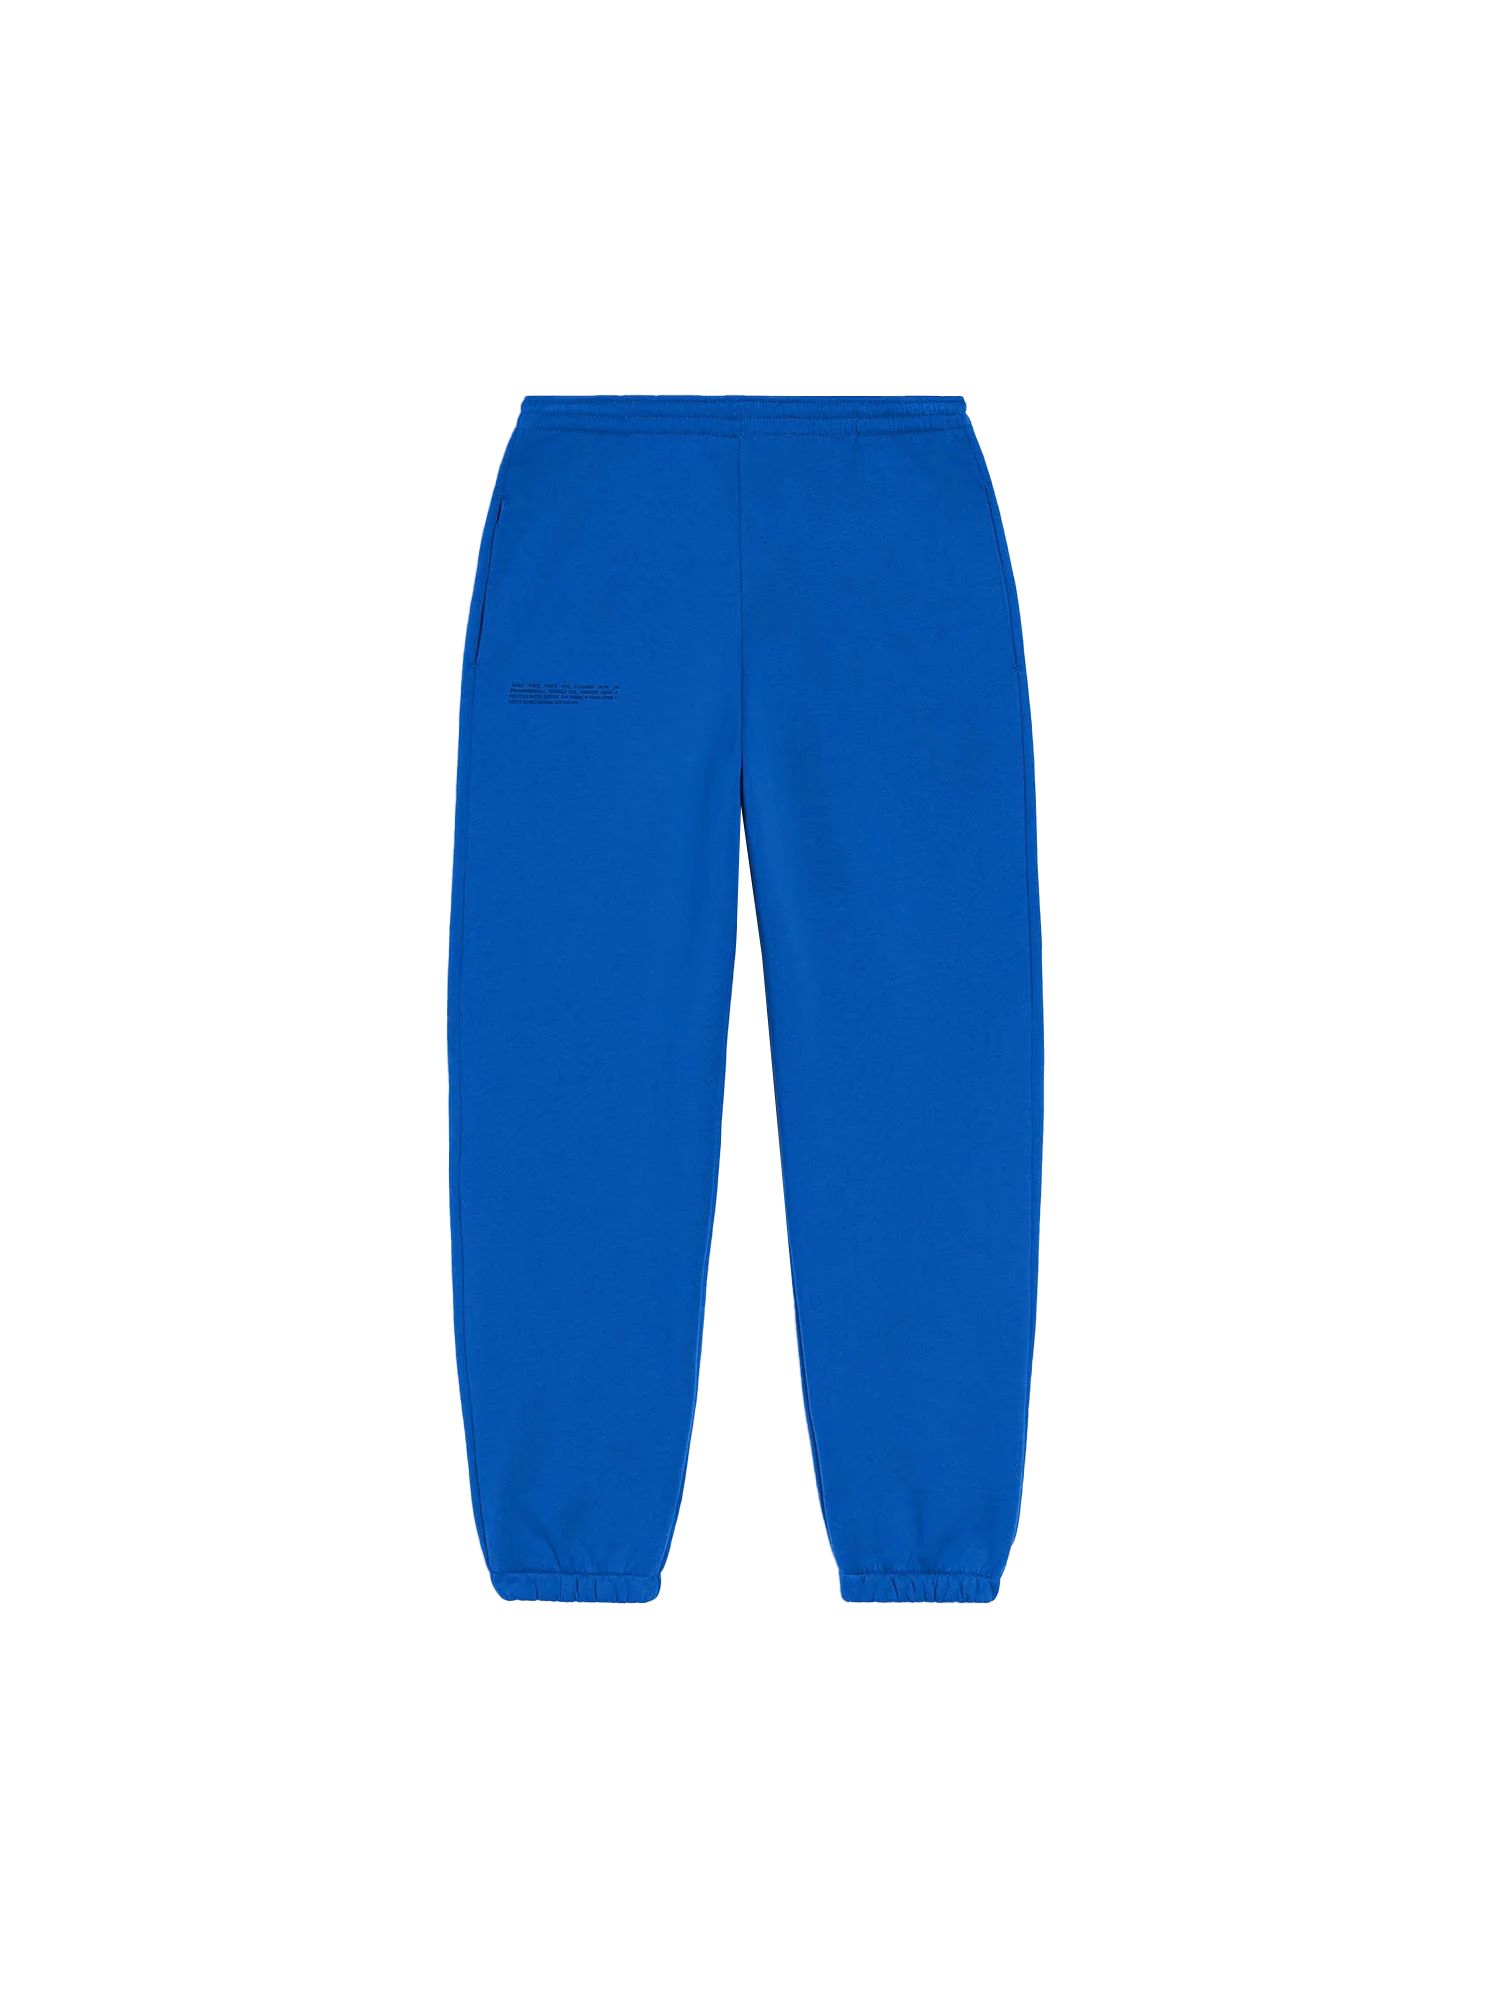 365 Signature Track Pants - Cobalt Blue - Pangaia | The Pangaia (EU, UK, AUS)